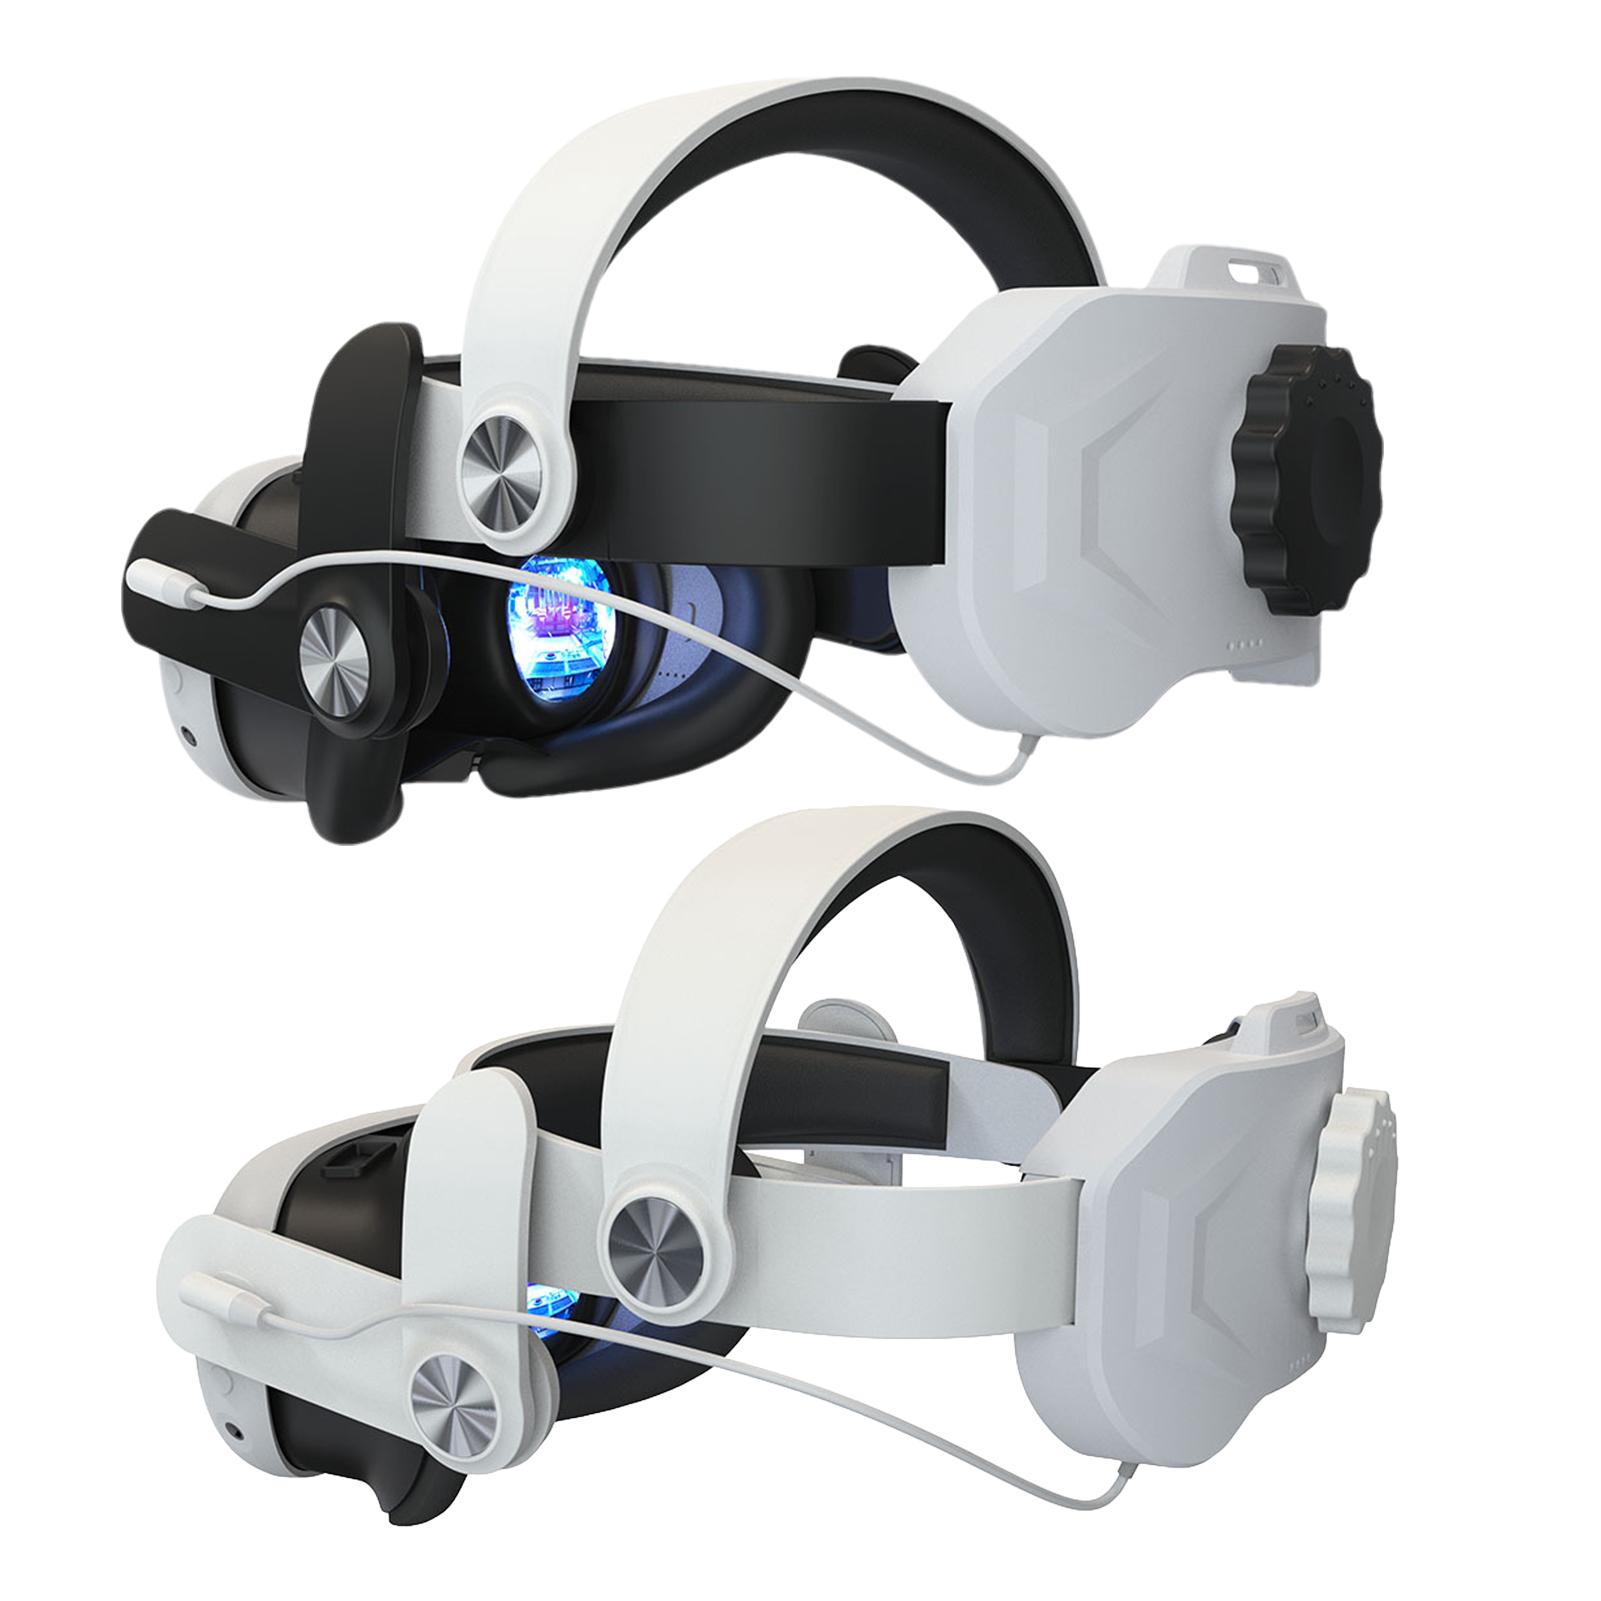 ヘッドストラップ バッテリー付き VR ヘッドセット 6000mAh バッテリーパック 調節可能なストラップ メタクエスト 3 VR ヘッドセットと互